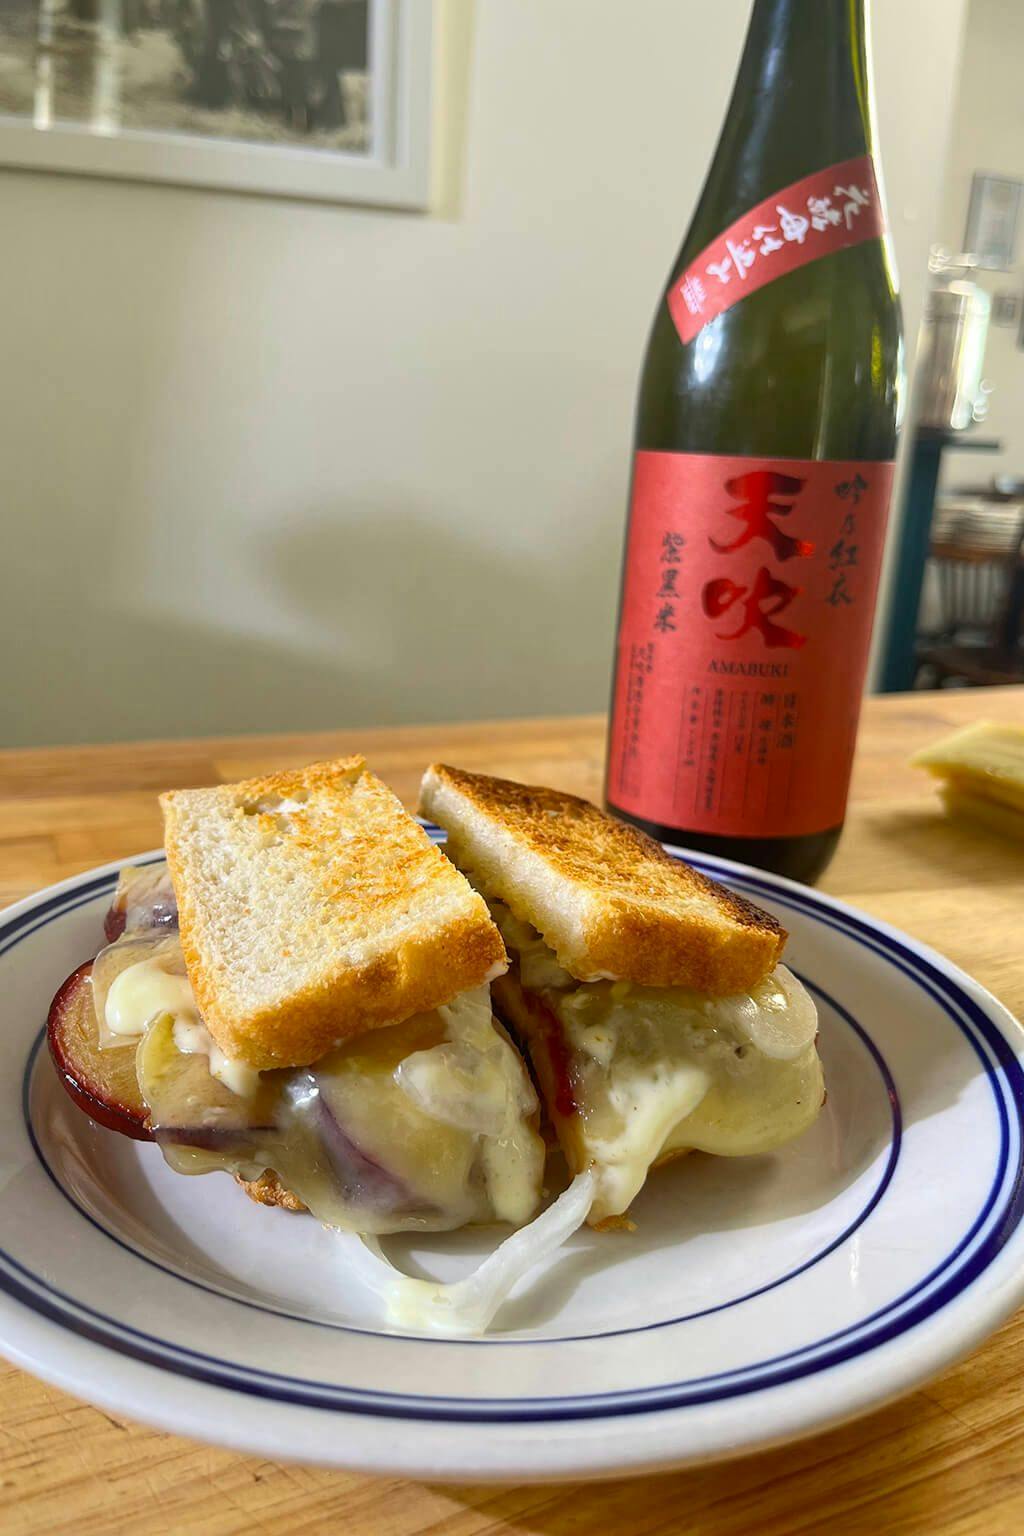 Amabuki “Gin no Kurenai” with the pork sandwich